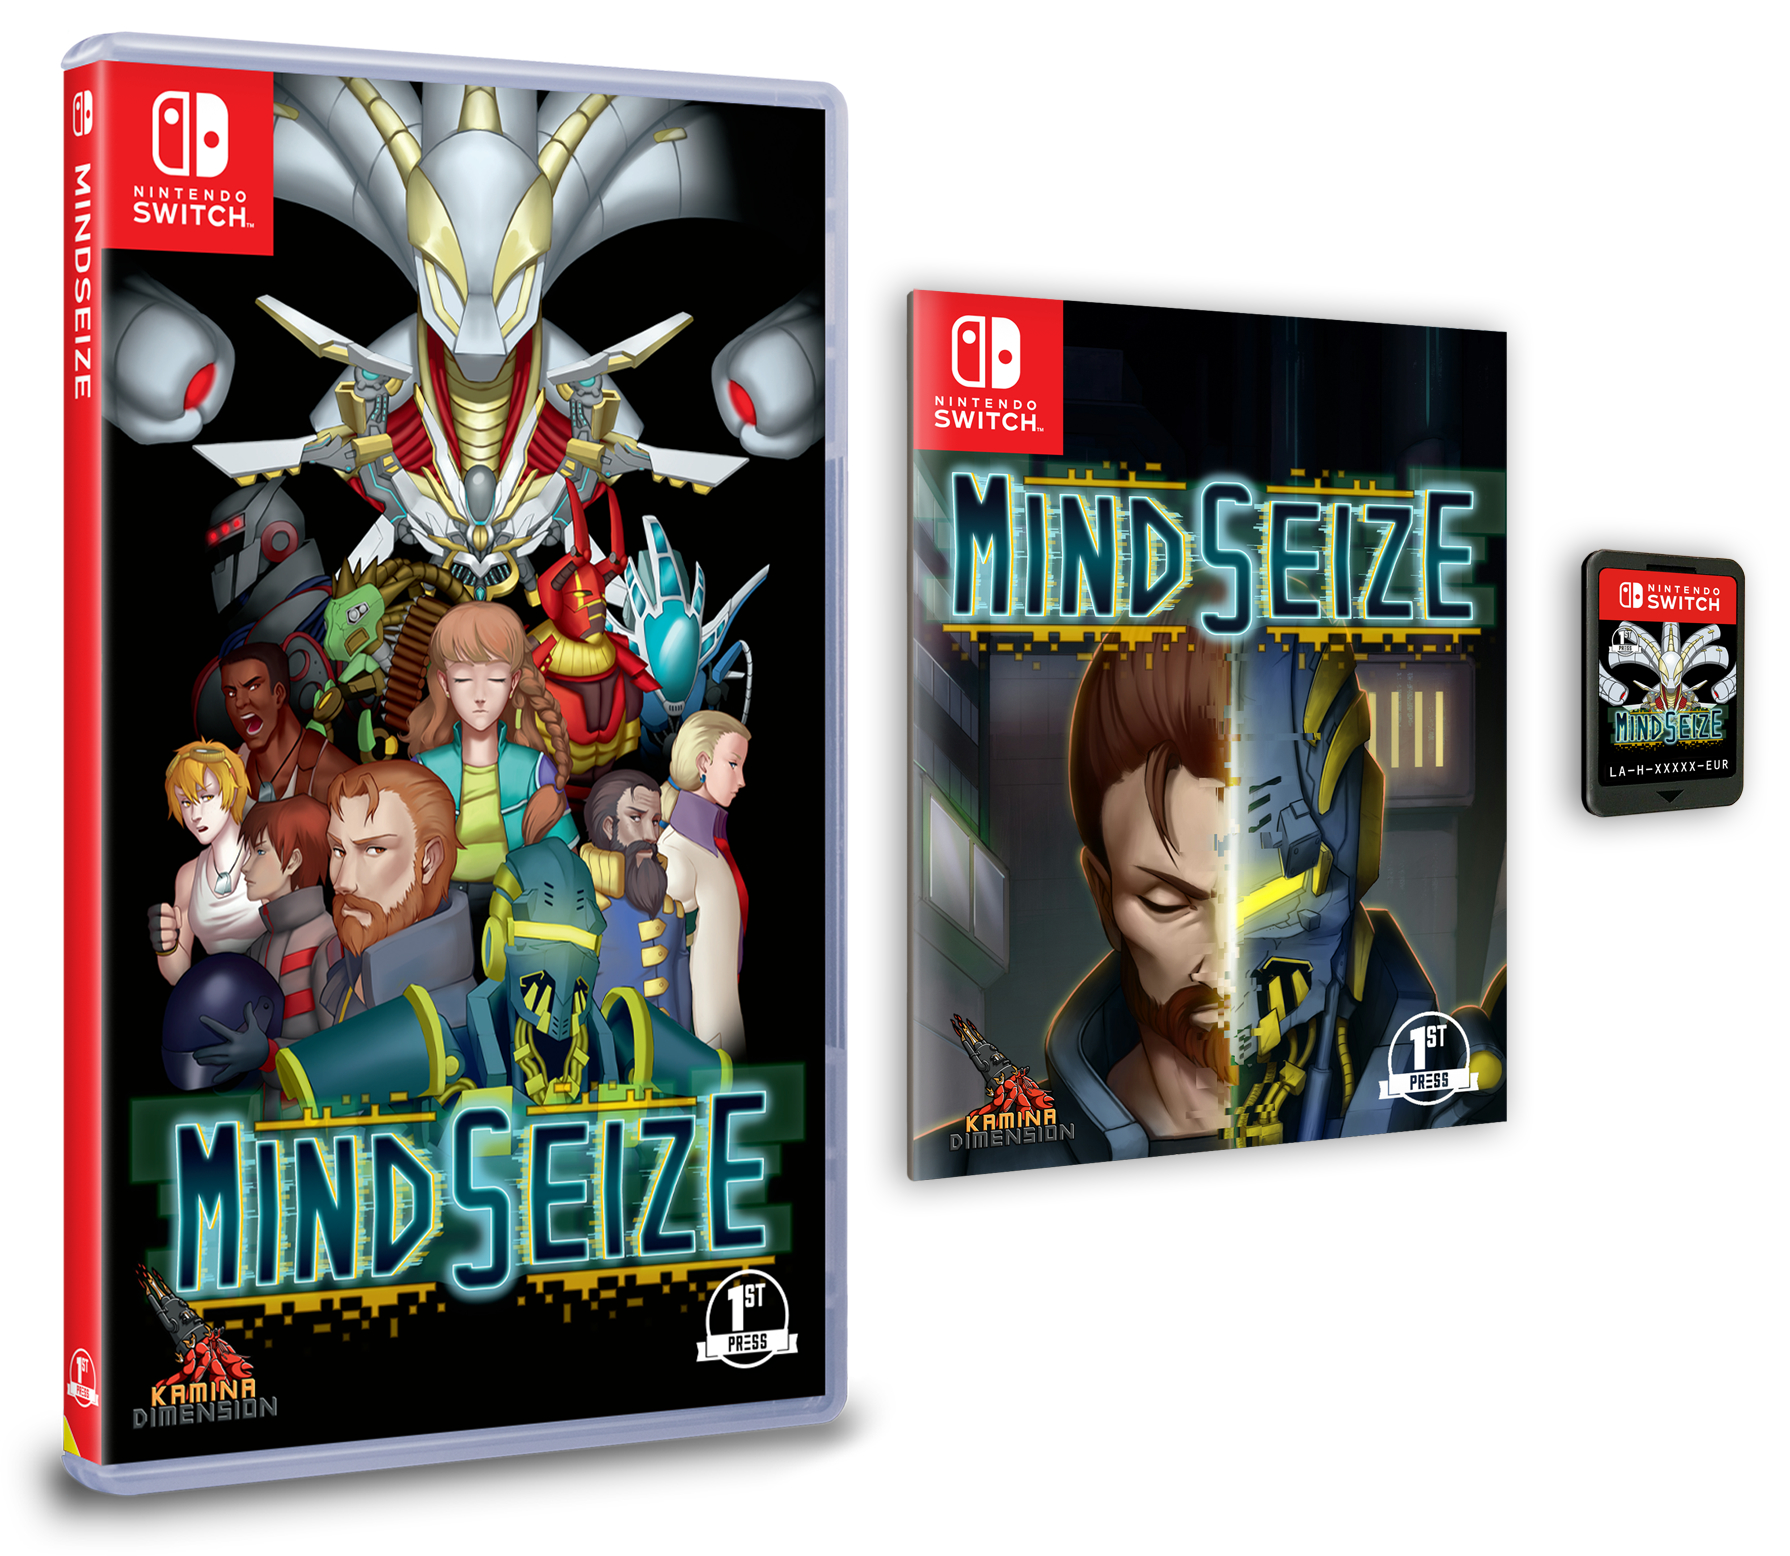 Mindsize マインド シーズ のswitch向けパッケージ版 ダウンロード版が発売決定